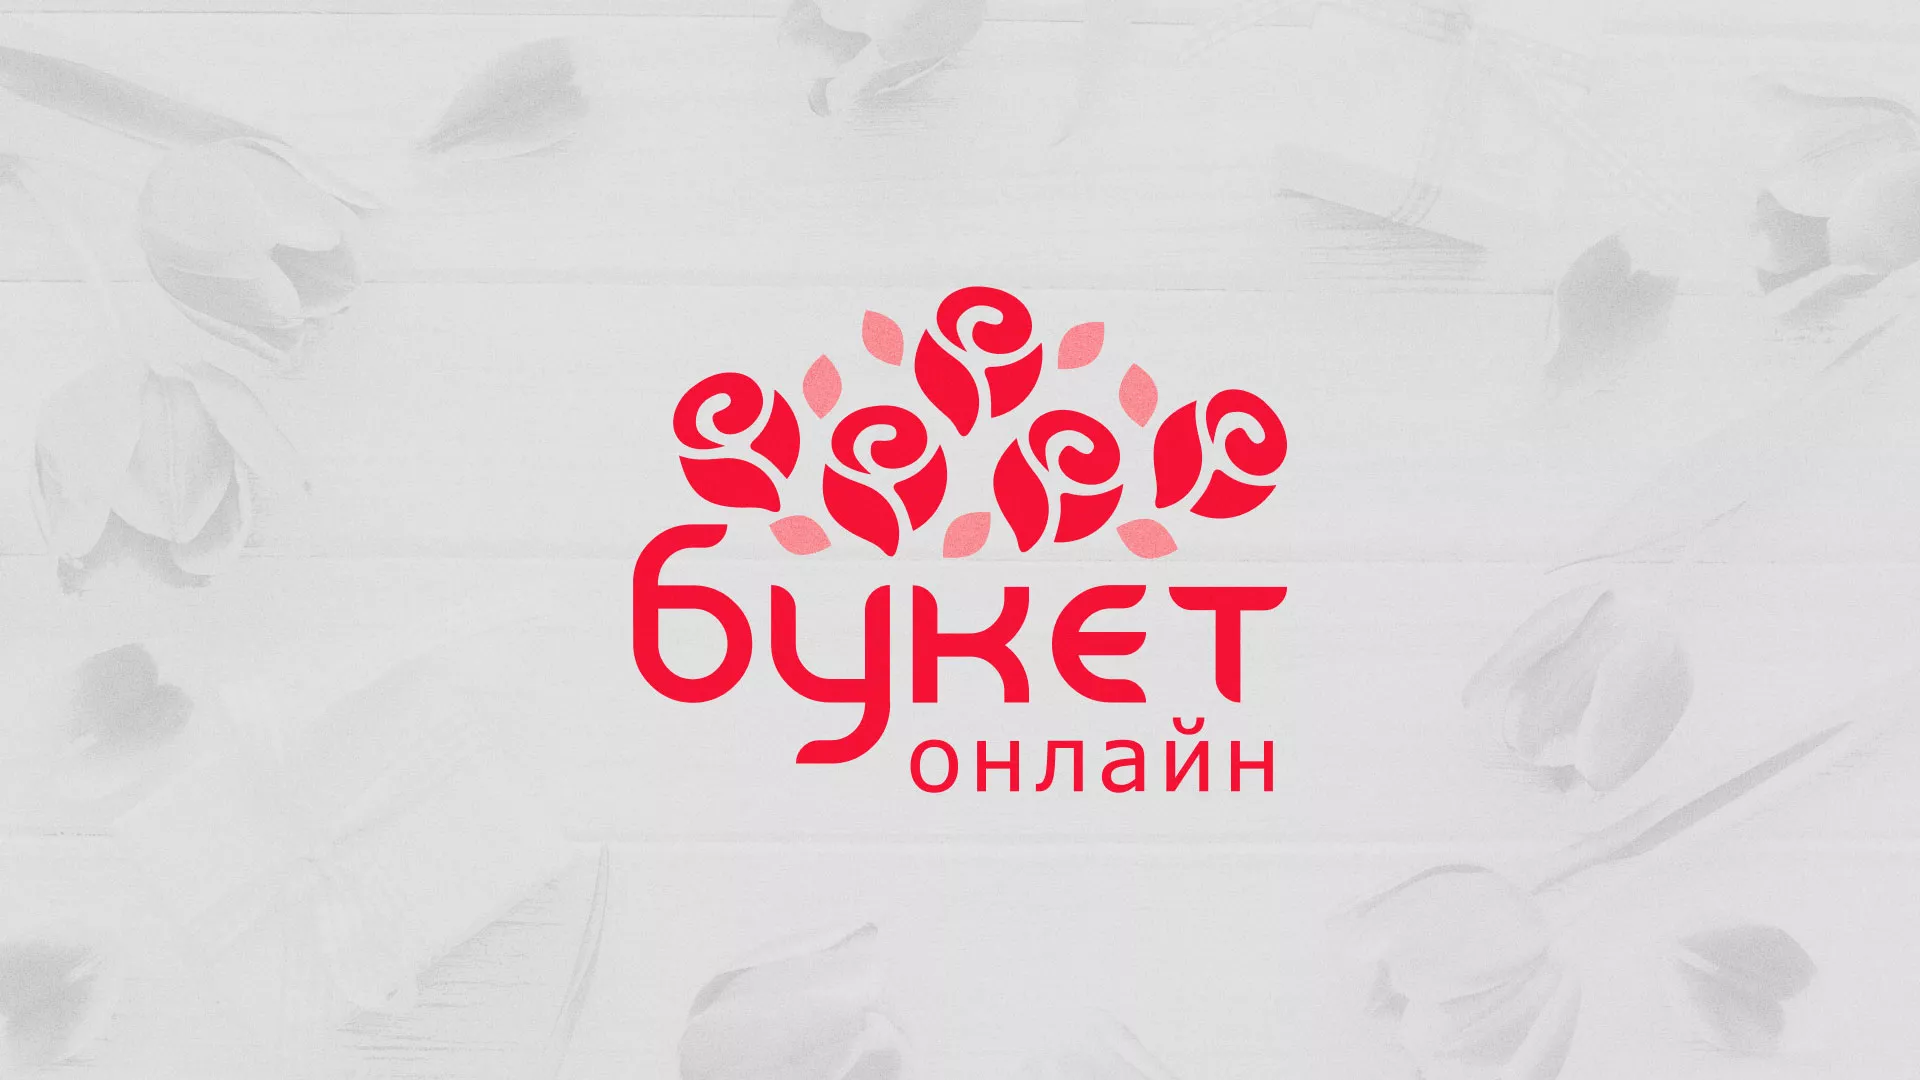 Создание интернет-магазина «Букет-онлайн» по цветам в Прохладном